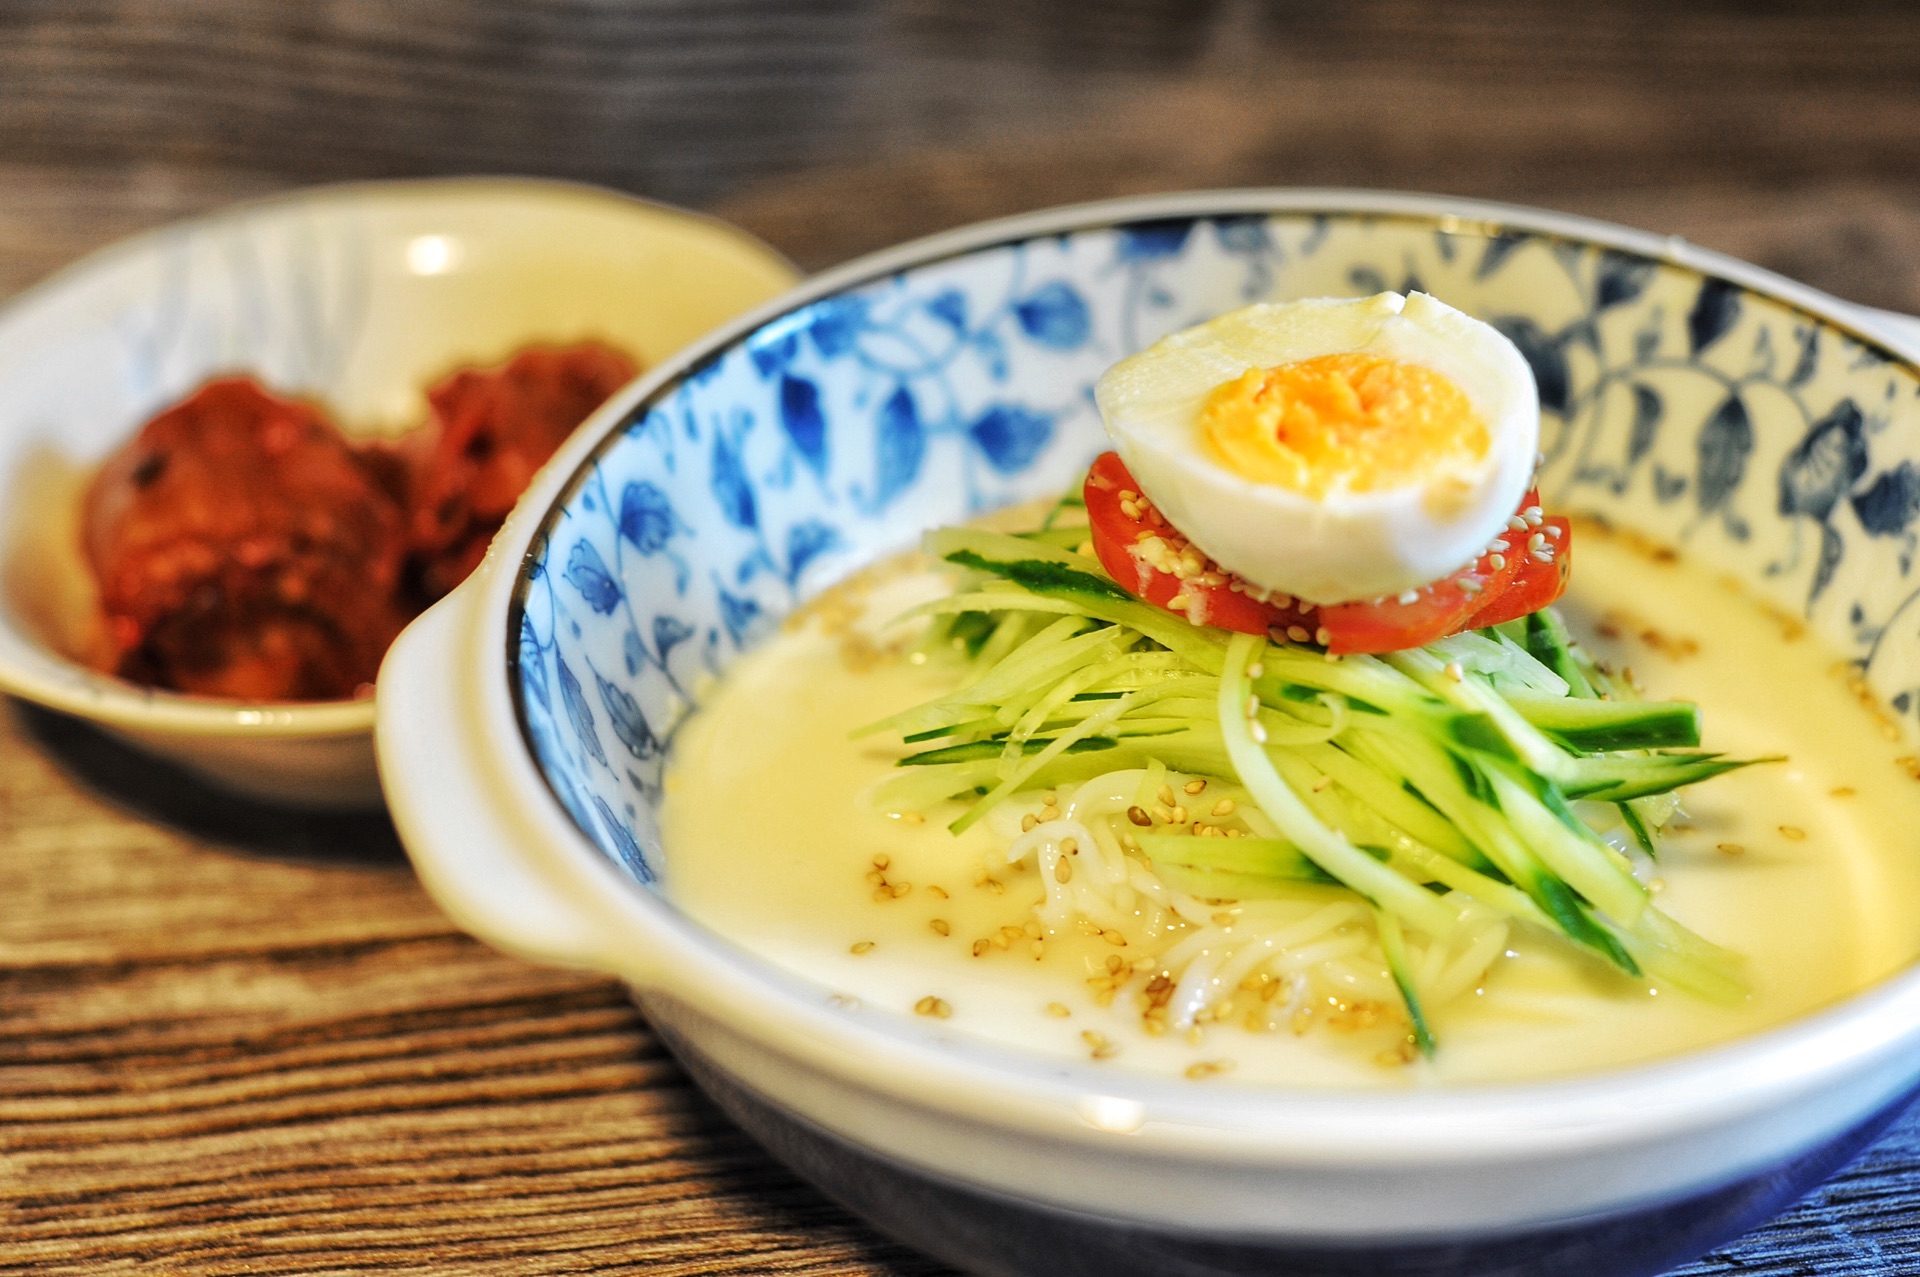 我的口味我来定《一起用餐吧2》-微卡版韩式豆浆冷面